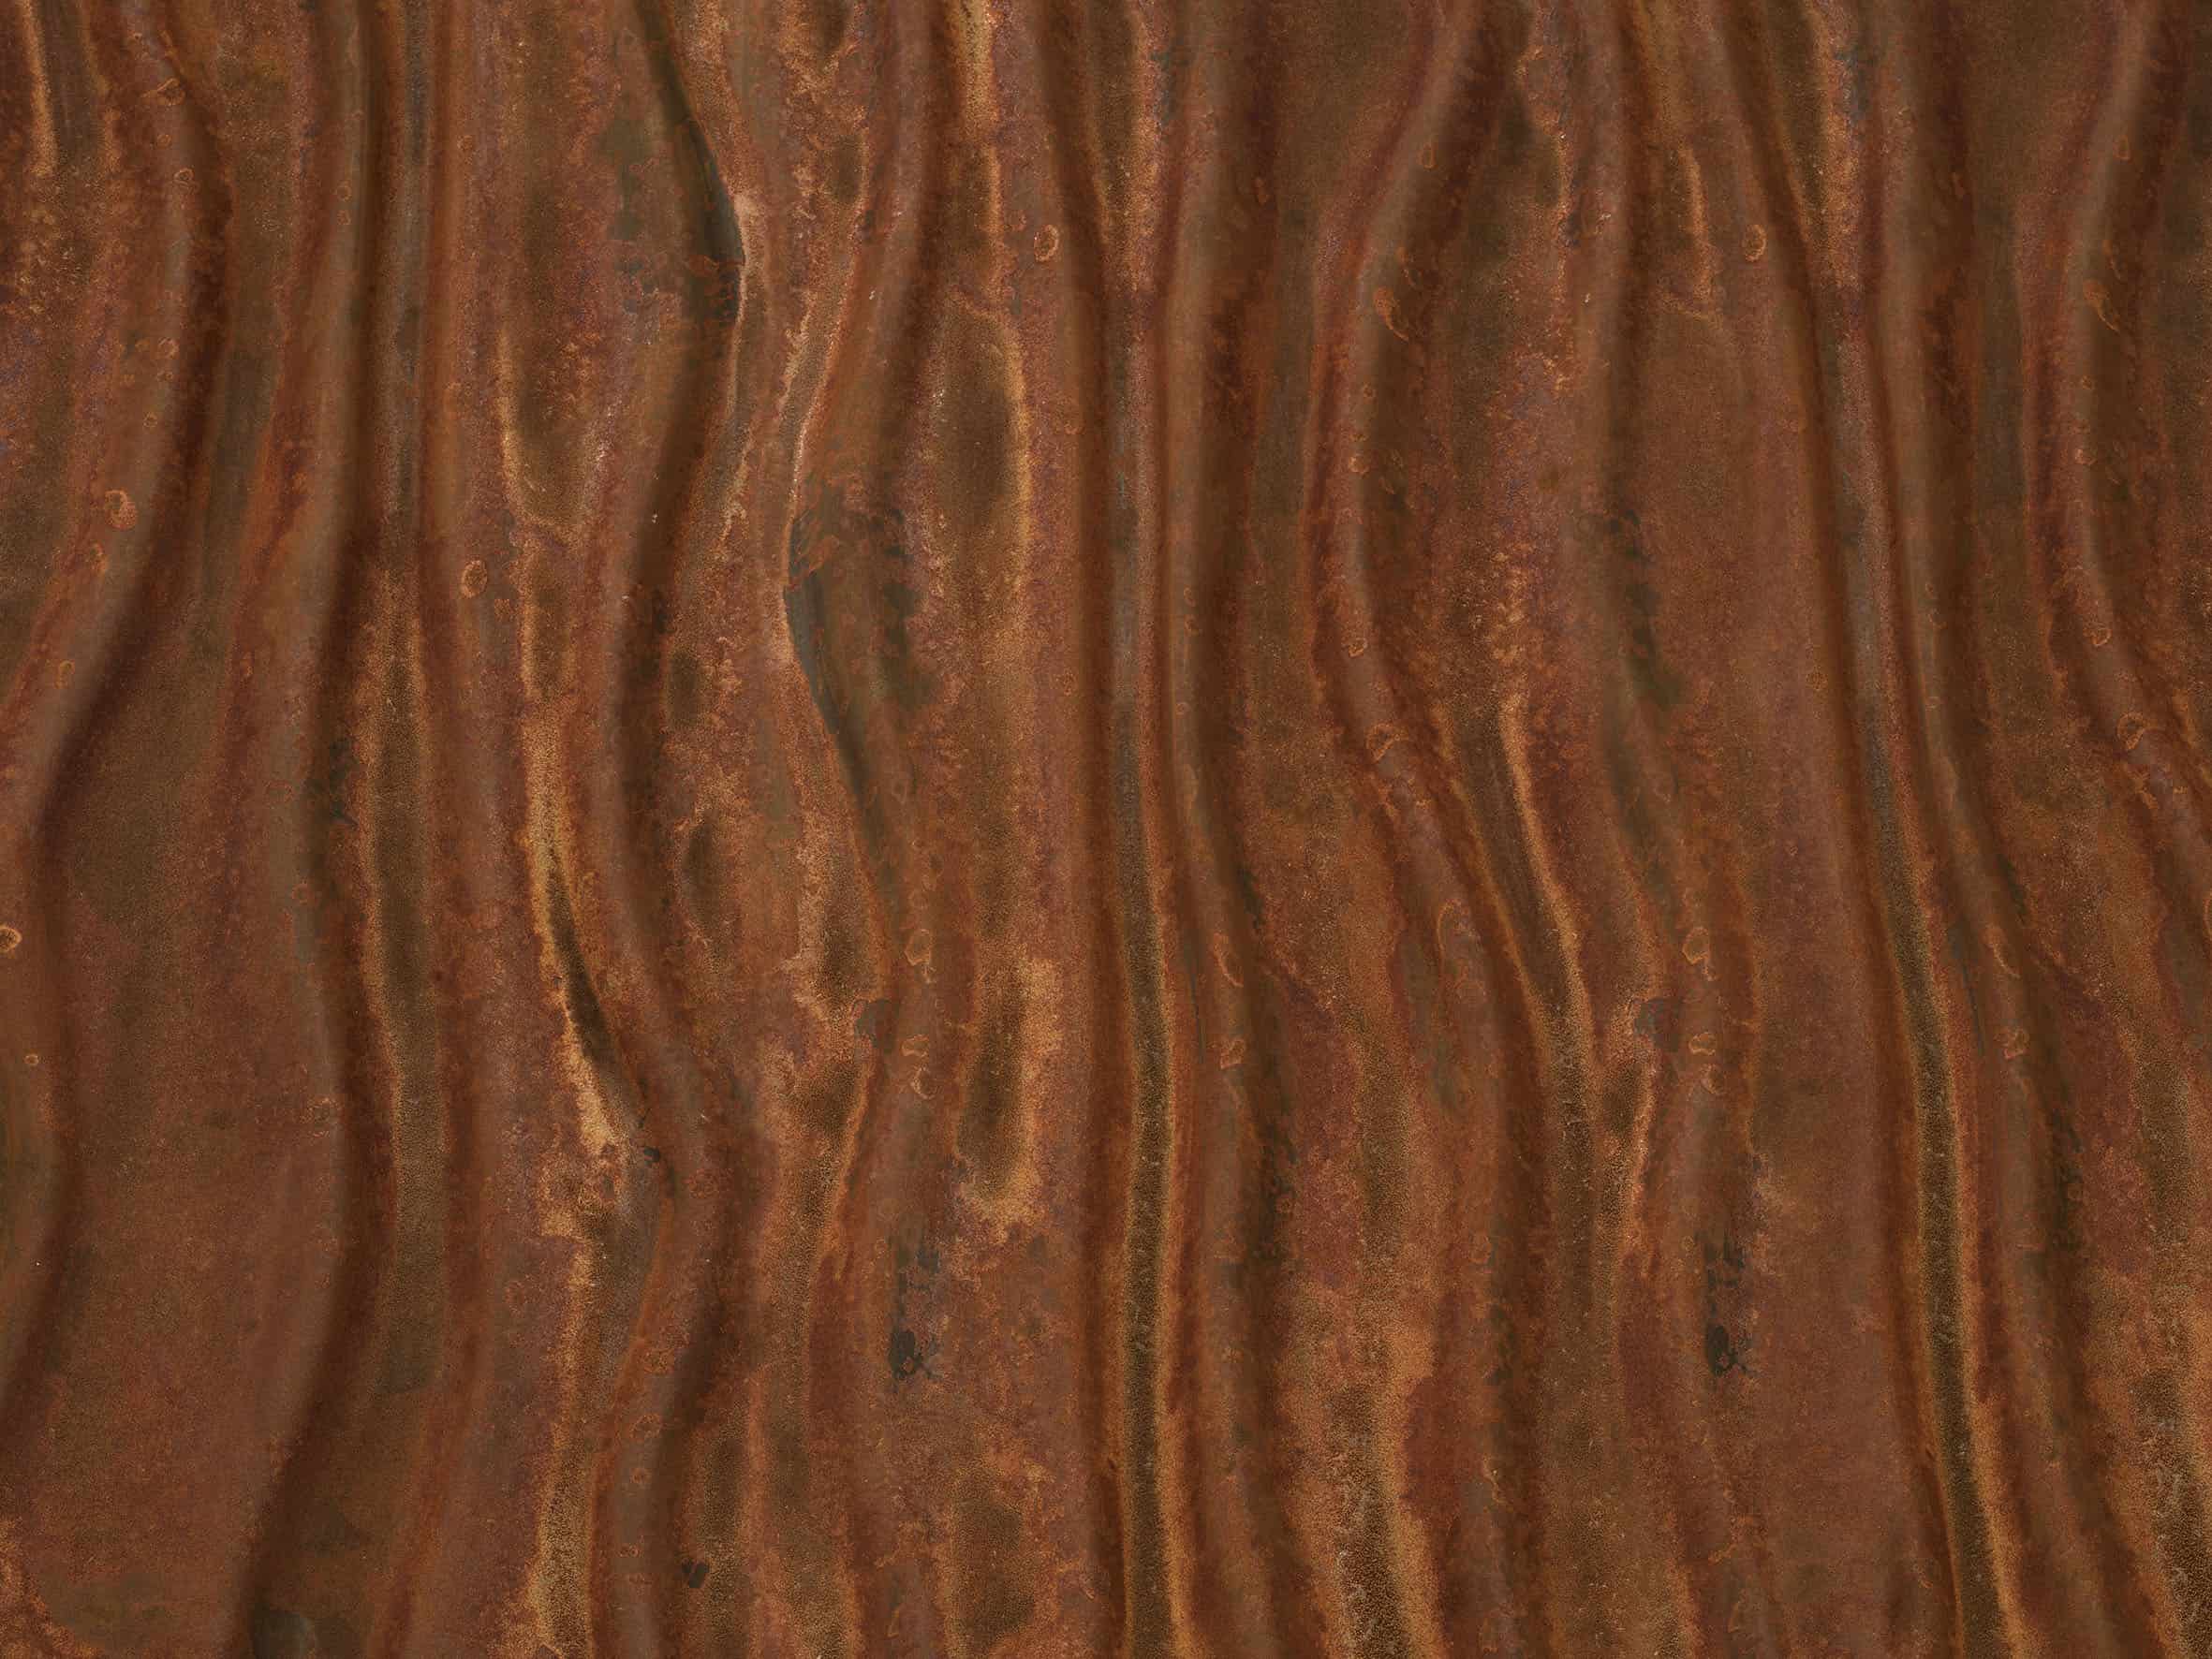 1009 VeroMetal Iron with patina